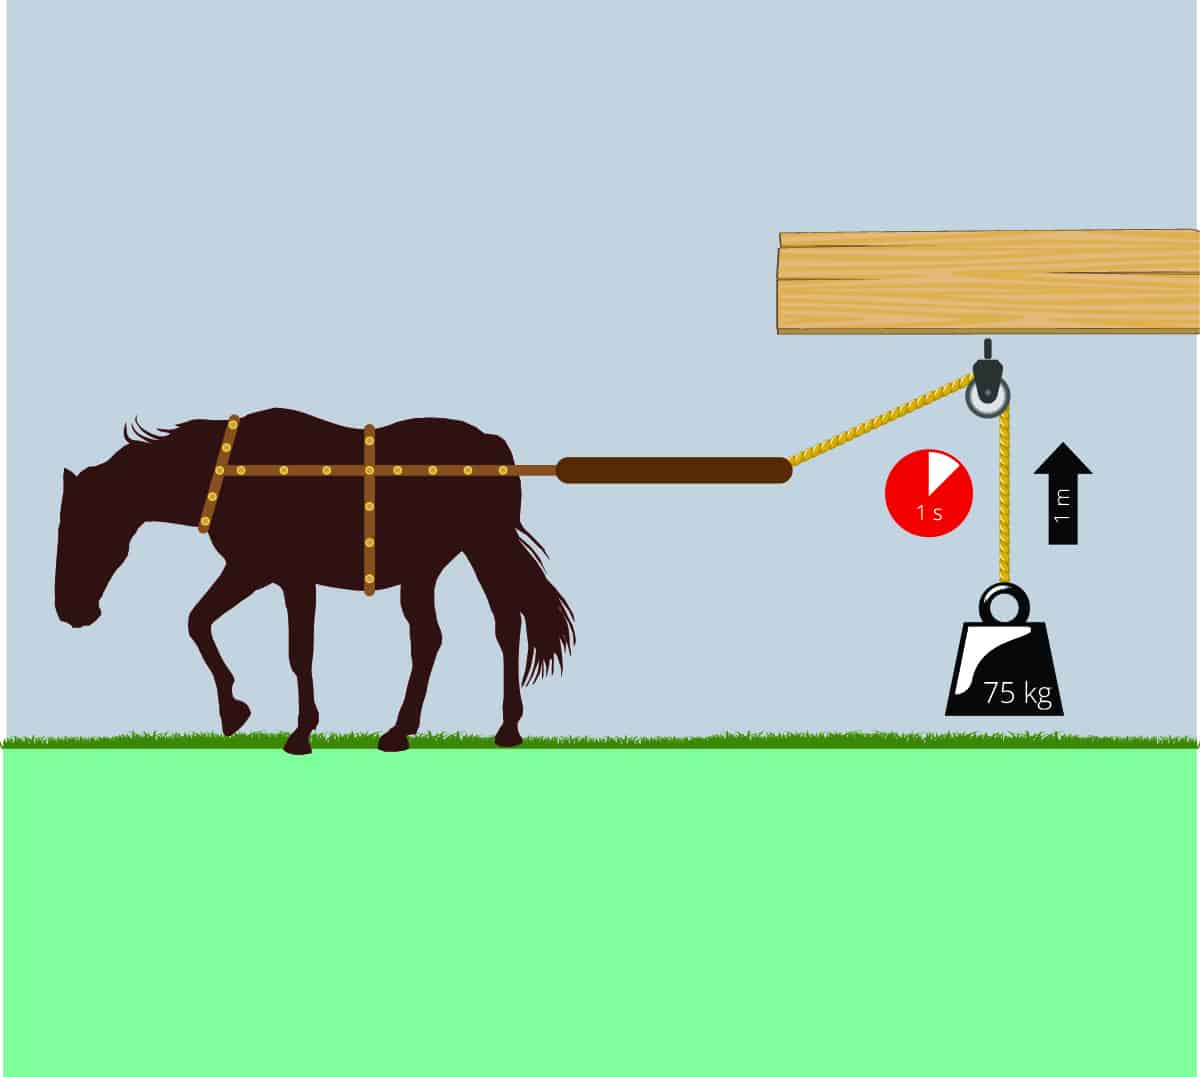 Basics of Horsepower